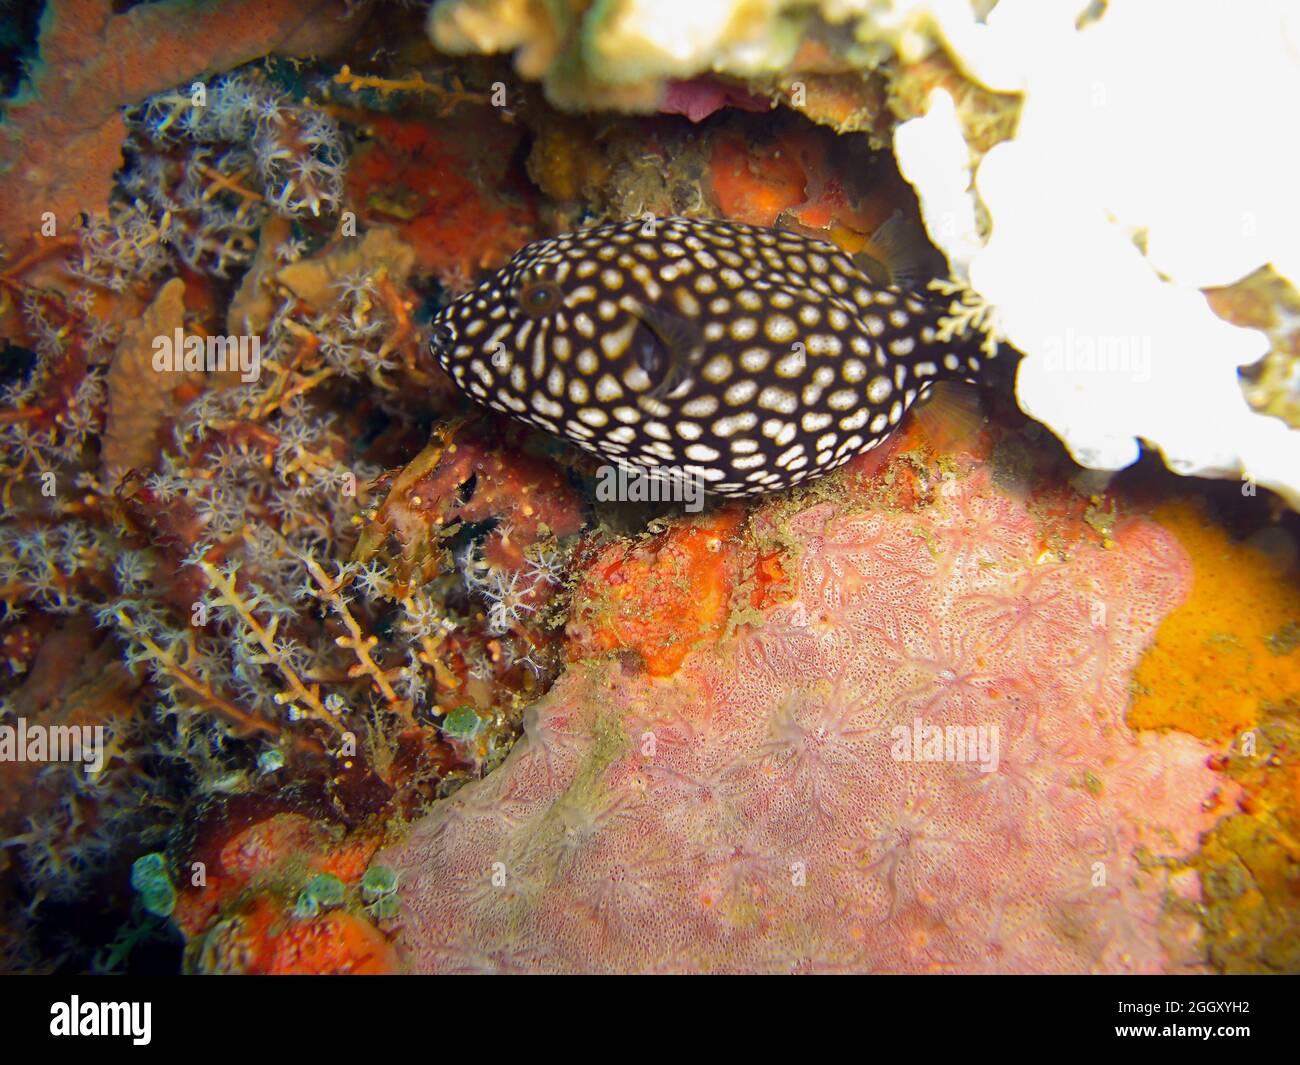 Unknown fish swims in the filipino sea 6.2.2012 Stock Photo